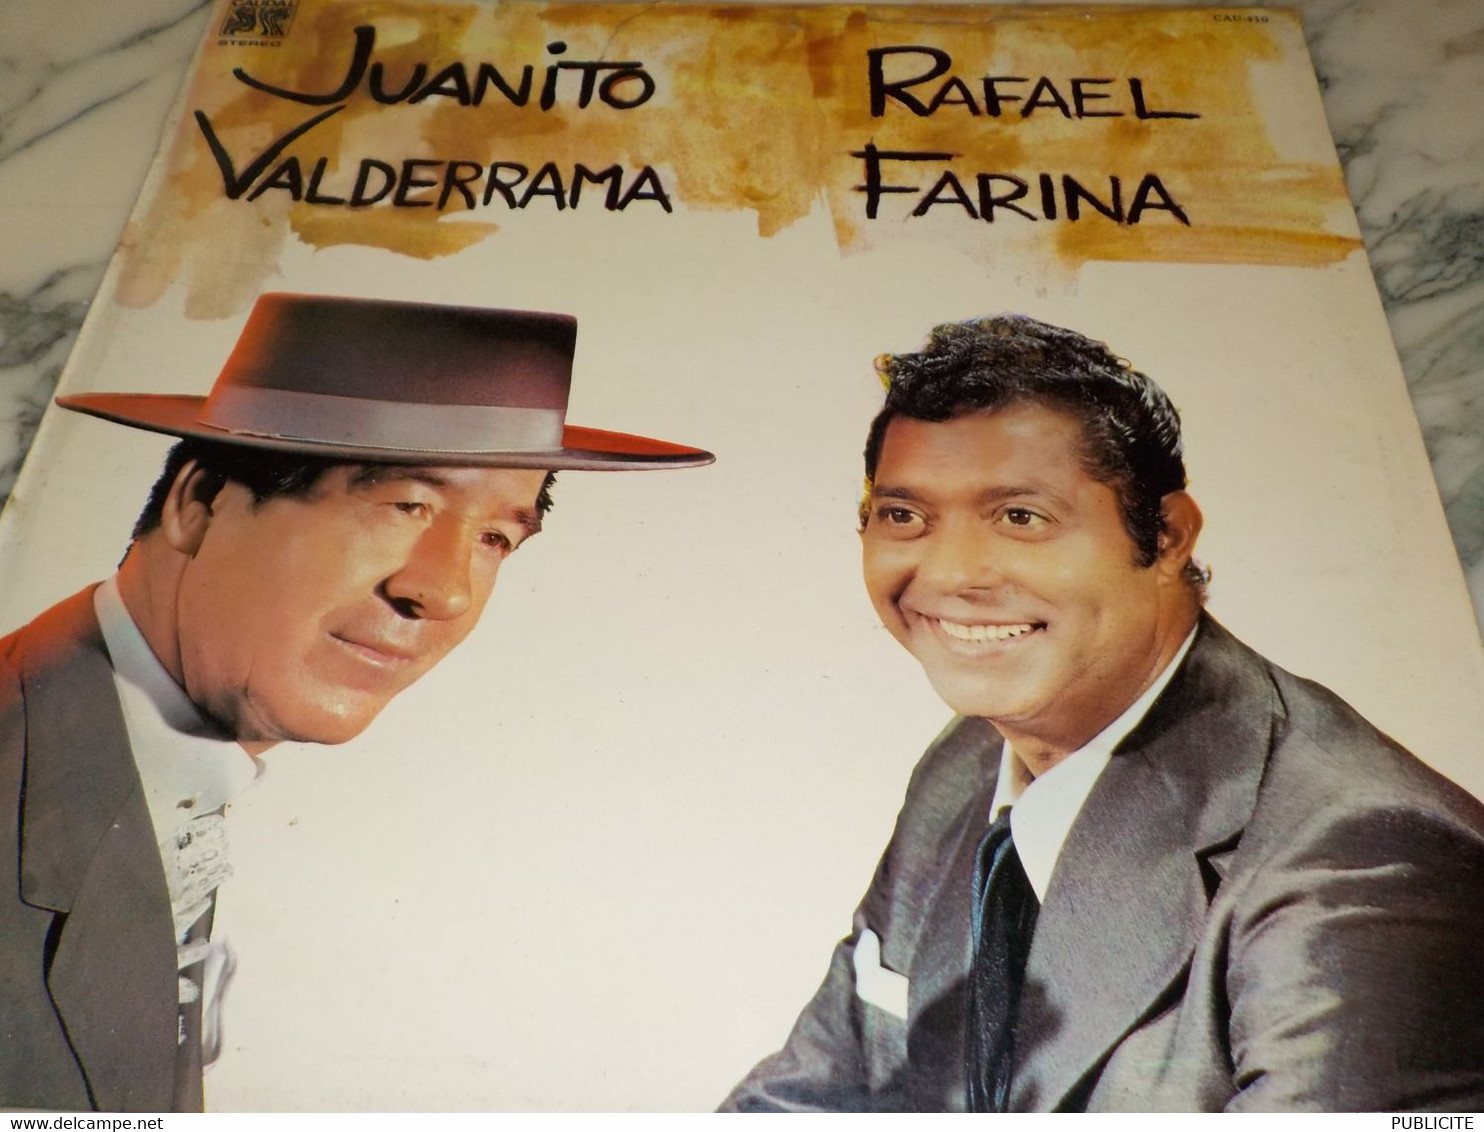 DISQUE 33 TOURS JUANITO VALDERRAMA ET RAFAEL FARINA 1976 - Altri - Musica Spagnola